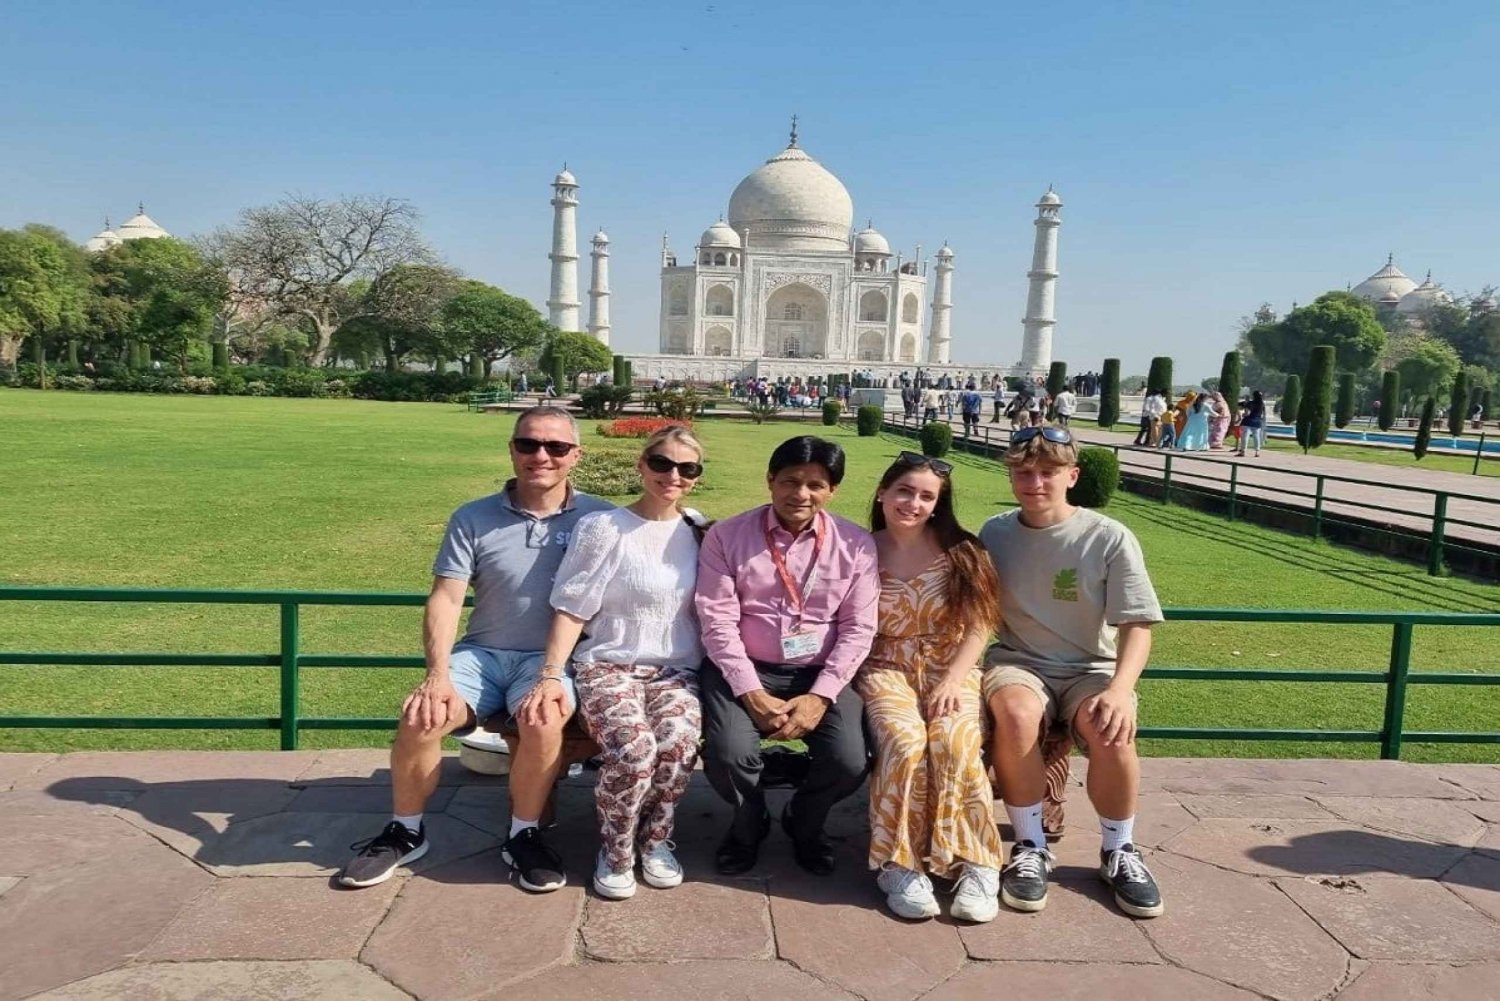 Fra Delhi: 7-dagers Golden Triangle Tour med Ranthambore